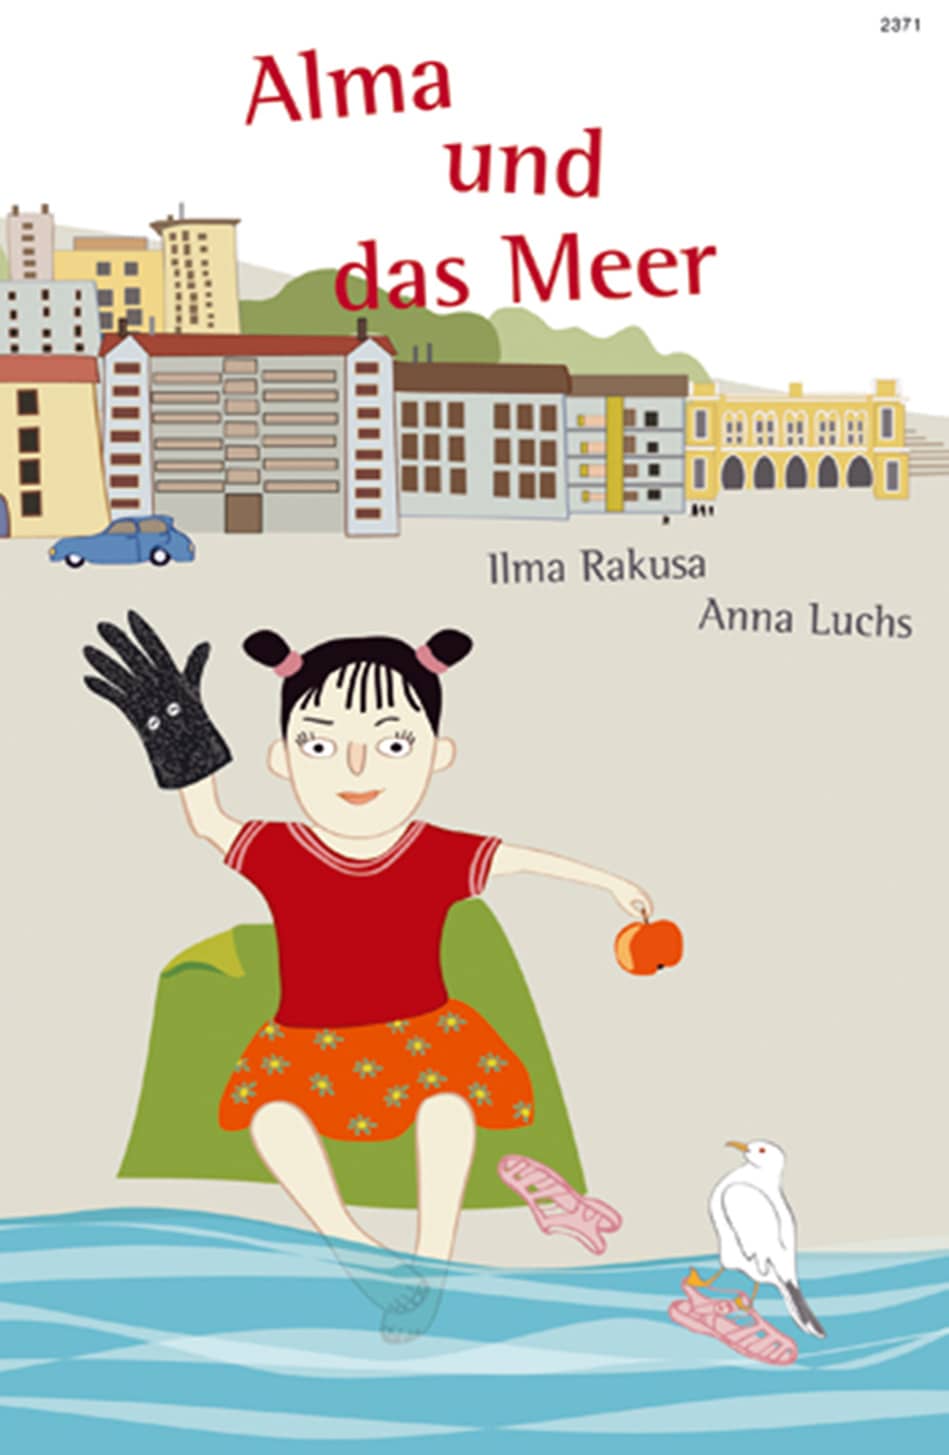 Alma und das Meer, ein Kinderbuch von Ilma Rakusa, Illustration von Anna Luchs, SJW Verlag, Fantasy